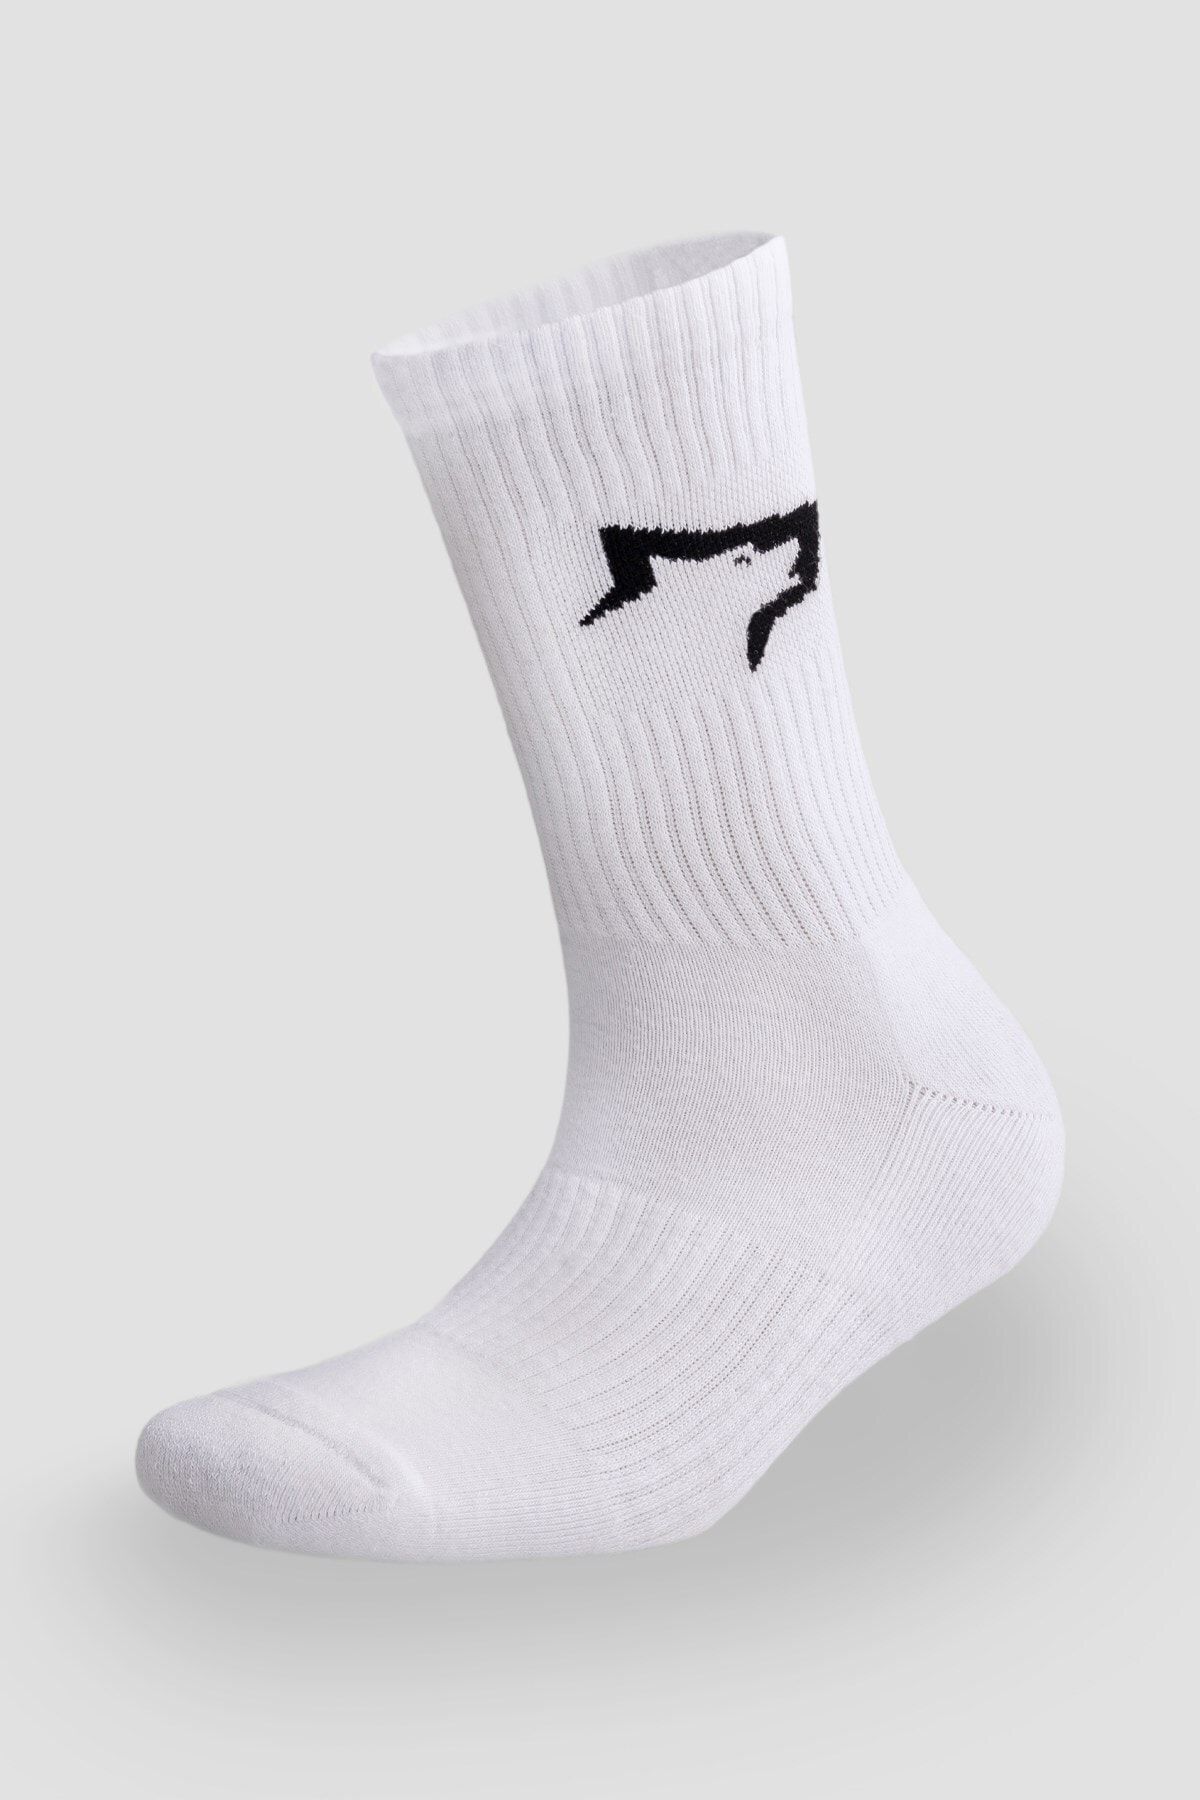 Gymwolves Atlatik Spor Çorap | 3 Lü Paket | Beyaz | Unisex Çorap | Sock |